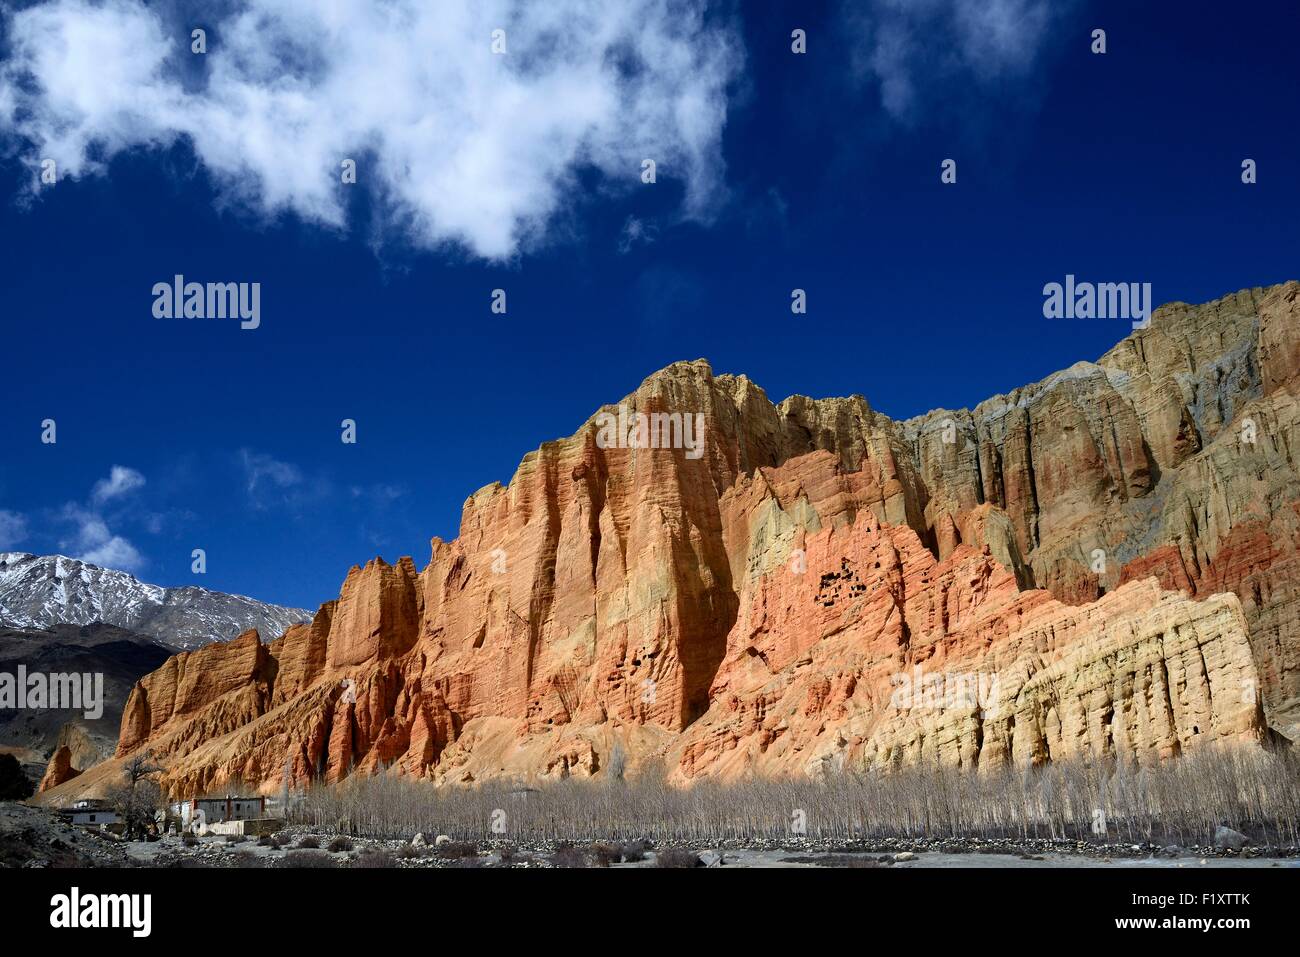 Le Népal, Gandaki zone, Upper Mustang (près de la frontière avec le Tibet), village de Dhakmar et Falaise rouge avec des grottes Banque D'Images